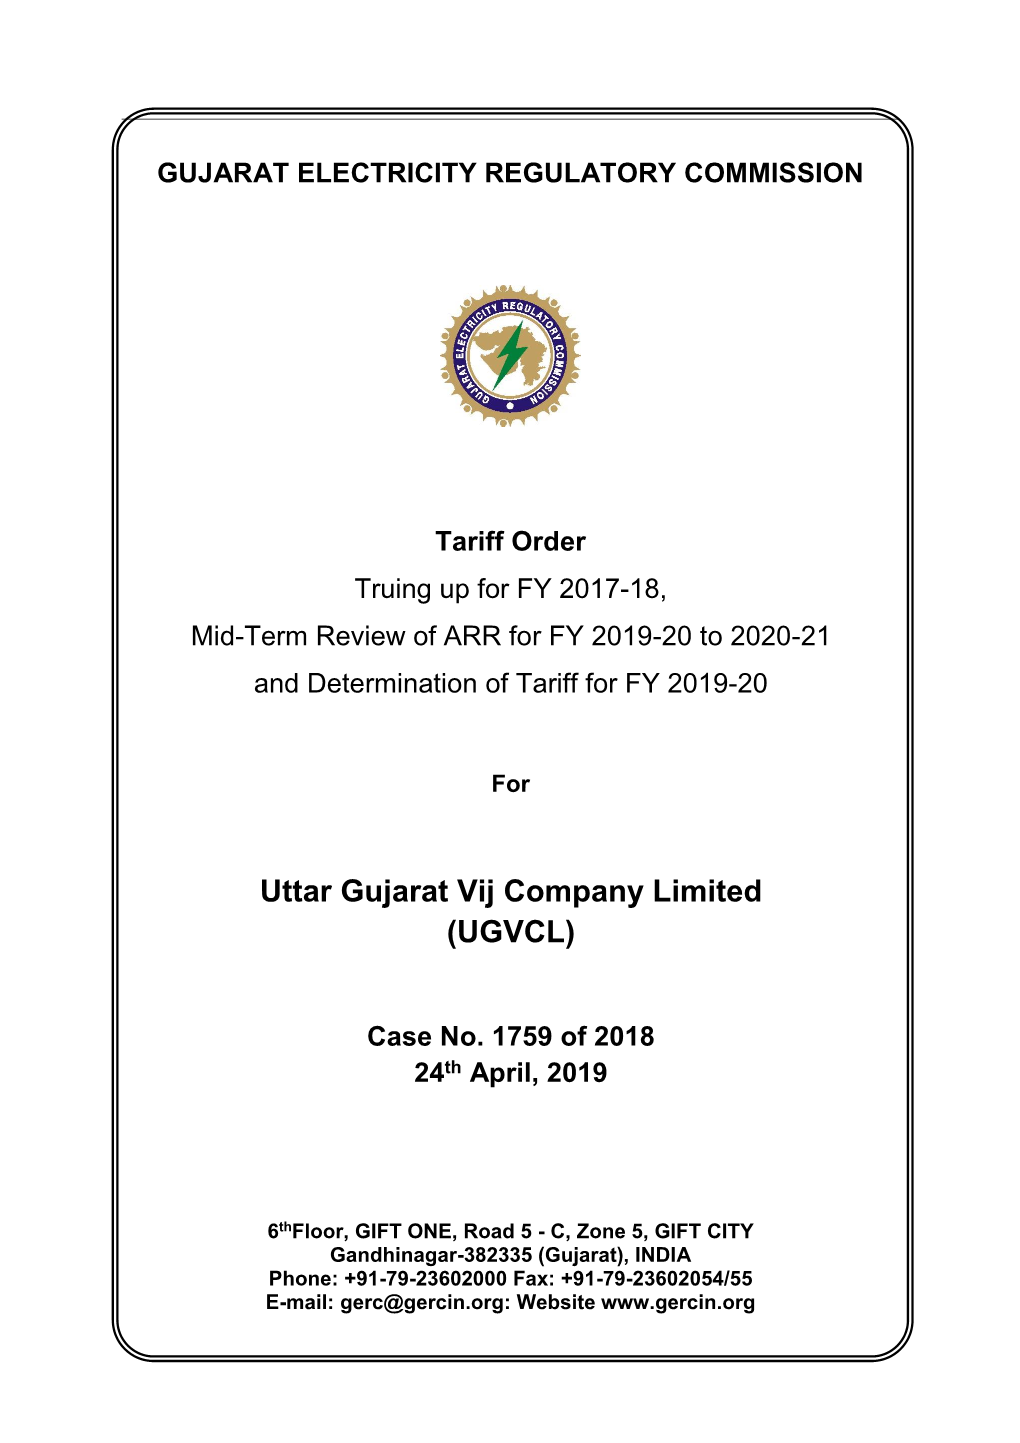 Tariff Order of F.Y. 2019-20